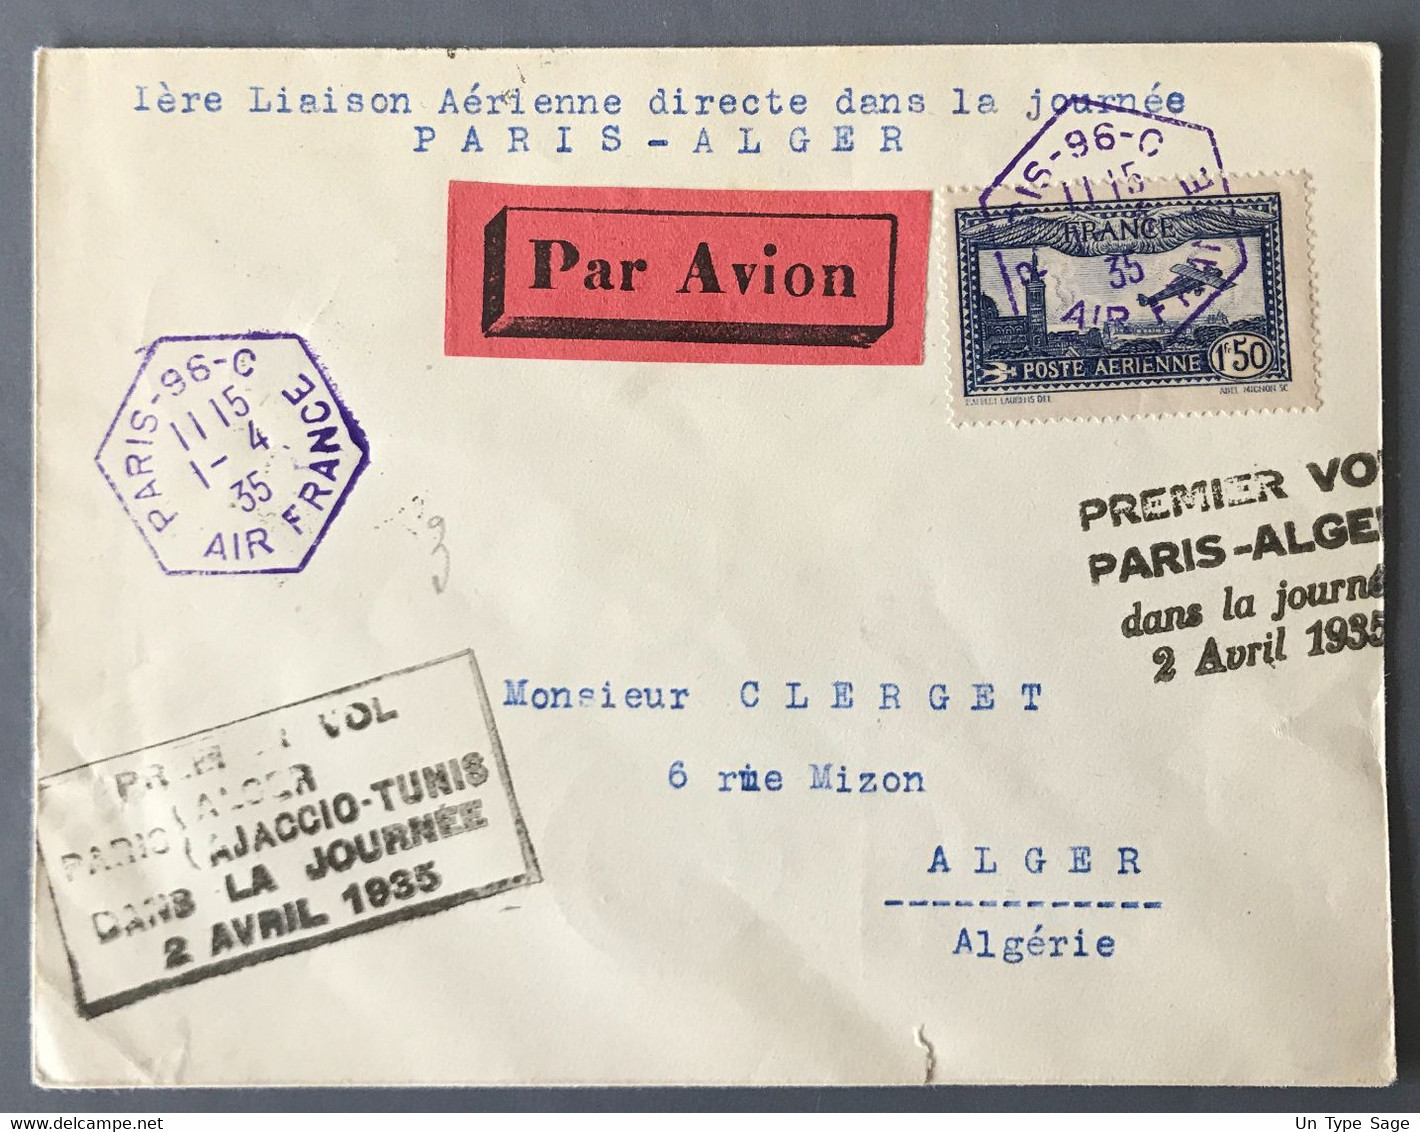 France PA N°6 Sur Enveloppe De Paris 1.4.1935 - Premier Vol Paris-Alger Dans La Journée 2 Avril 1935 - (W1115) - 1960-.... Lettres & Documents